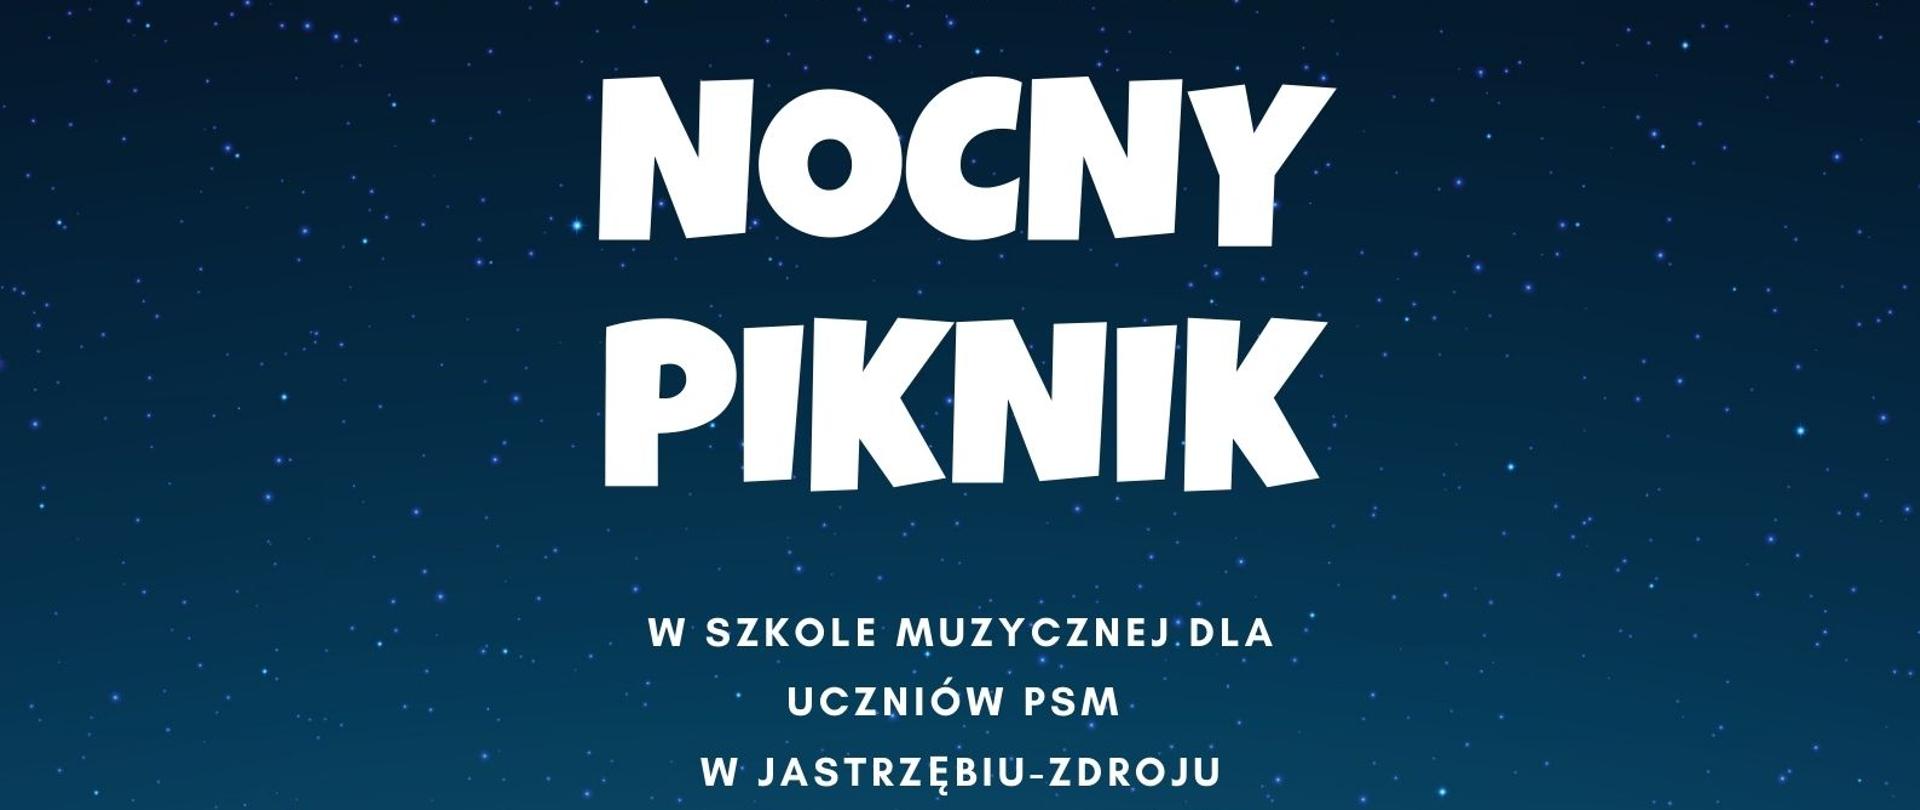 Plakat nocnego pikniku który odbędzie się 26 maja 2023 roku w Szkole Muzycznej w Jastrzębiu-Zdroju